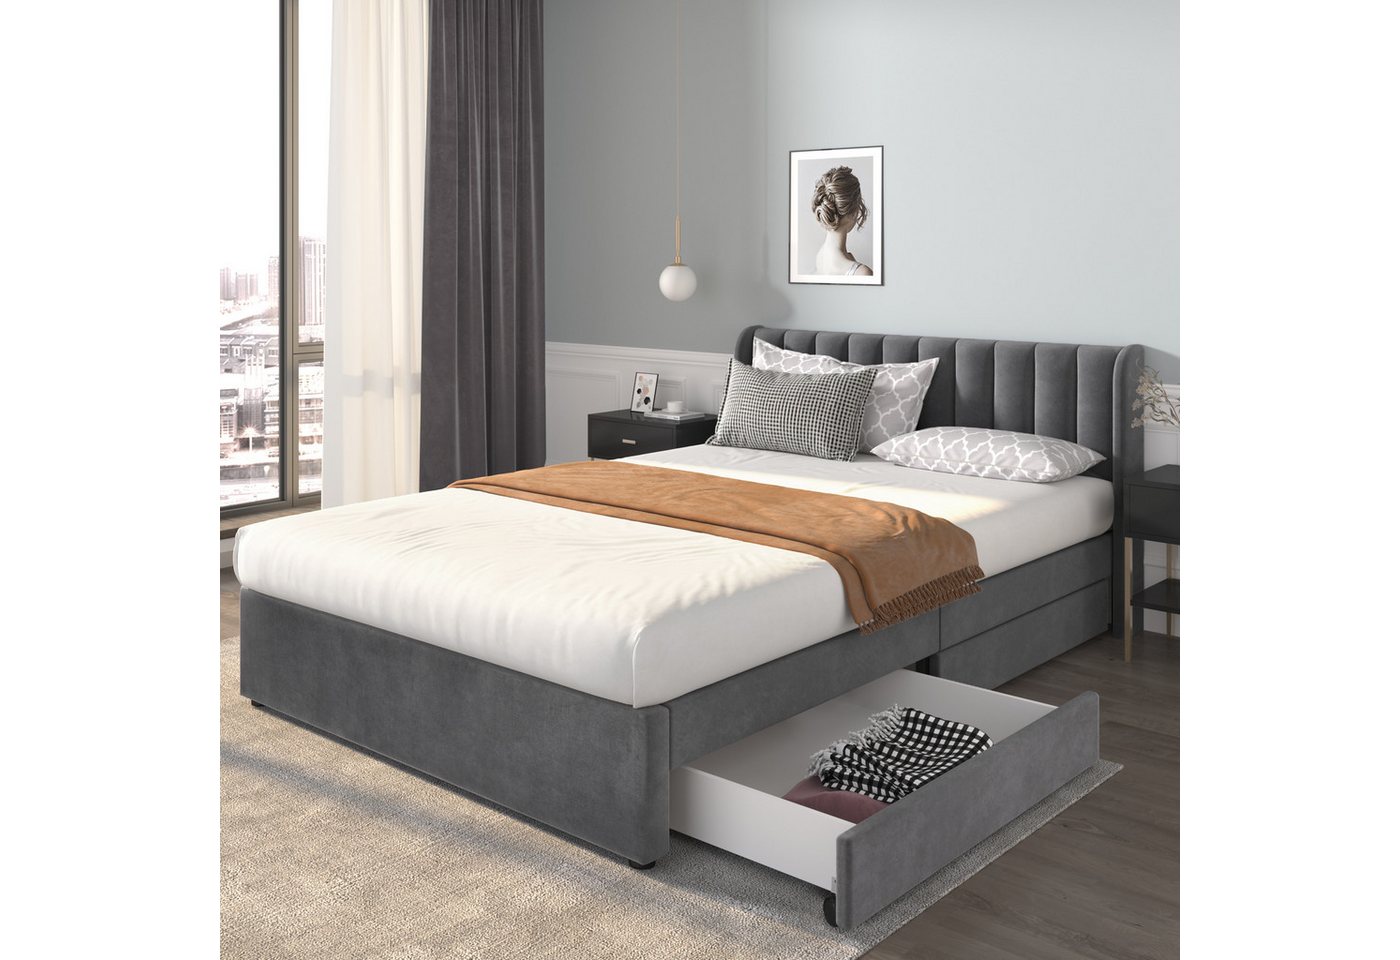 MODFU Polsterbett Doppelbett Stauraumbett Bett mit Lattenrost ohne Matratze (160 x 200 cm), Schlichter und stilvoller Samt-Look von MODFU